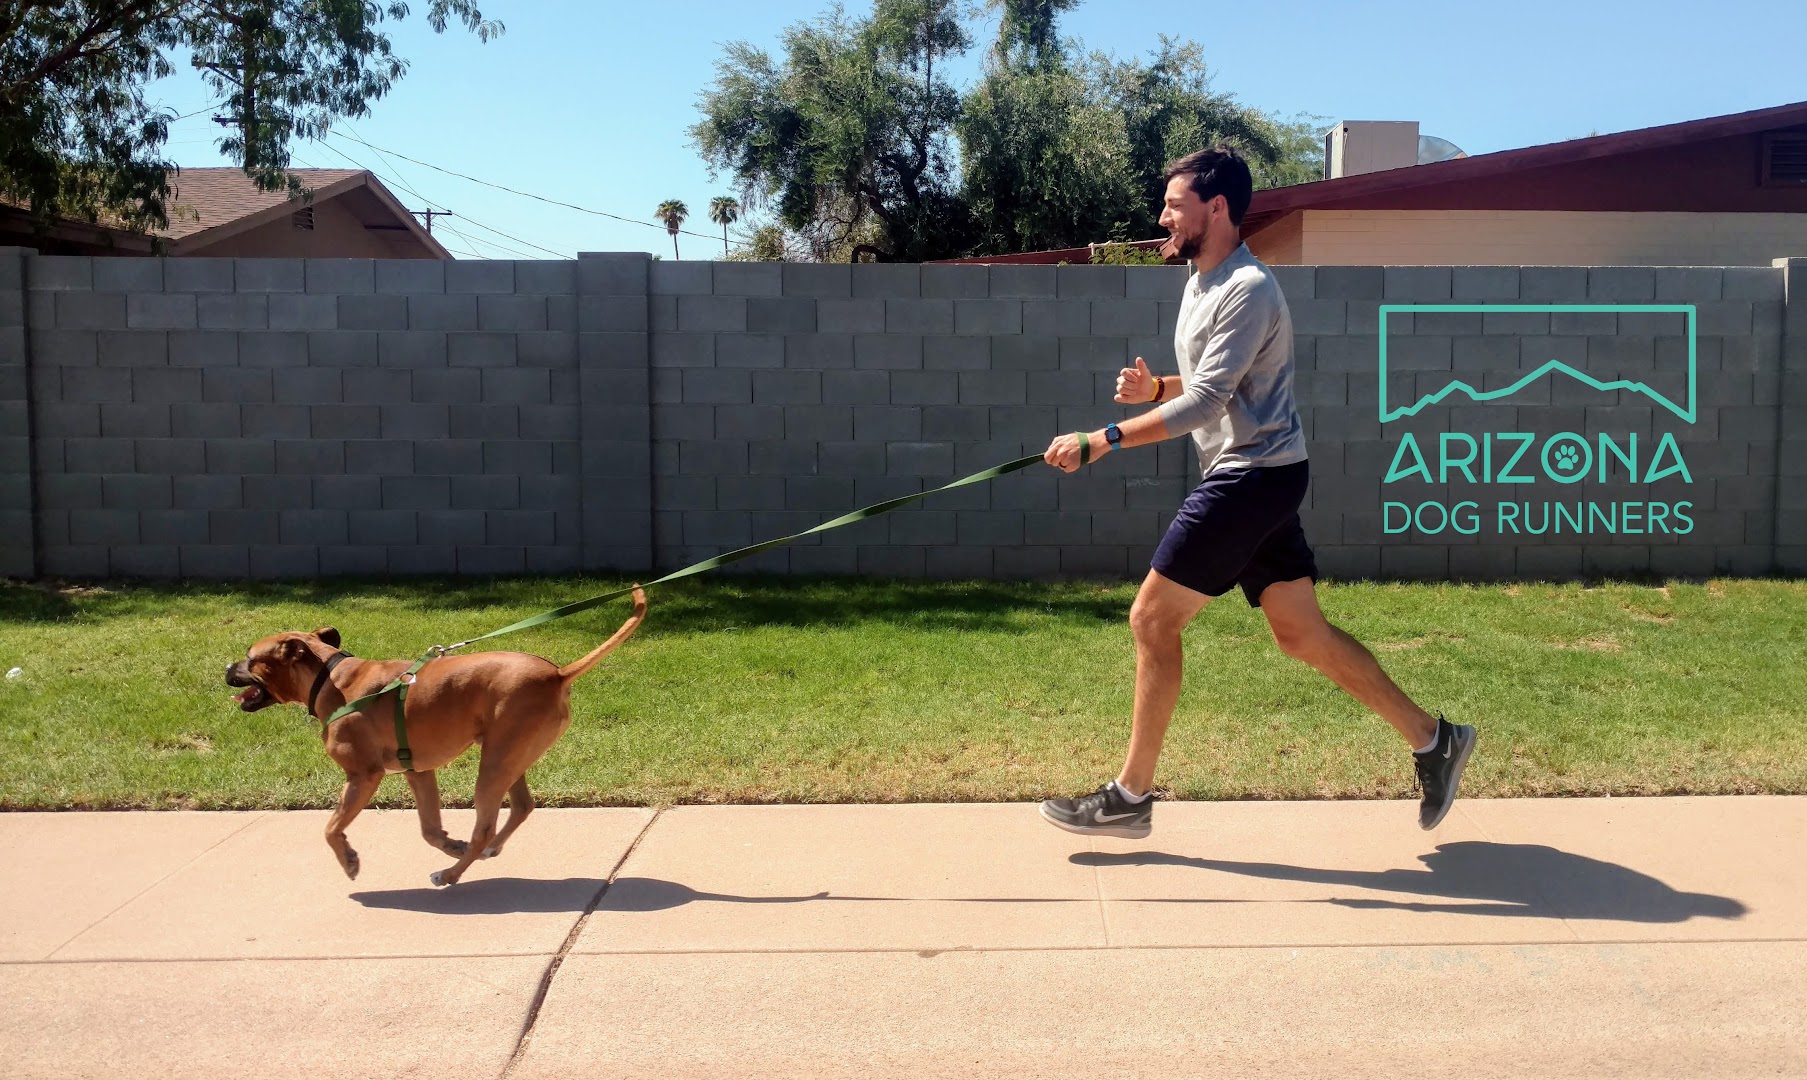 Arizona Dog Runners